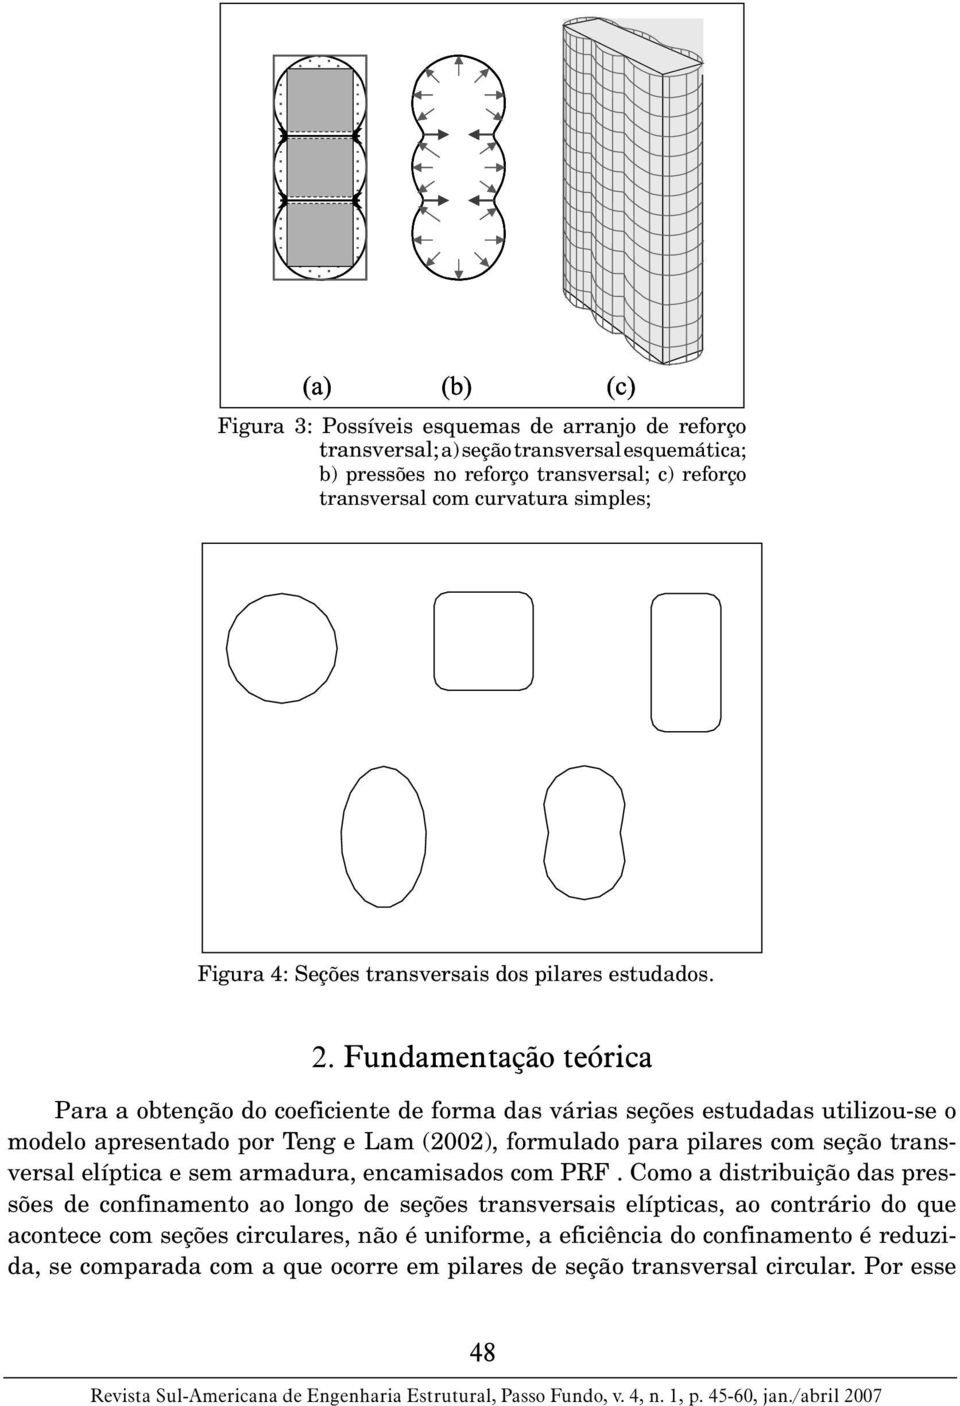 Fundamentação teórica Para a obtenção do coeficiente de forma das várias seções estudadas utilizou-se o modelo apresentado por Teng e Lam (2002), formulado para pilares com seção